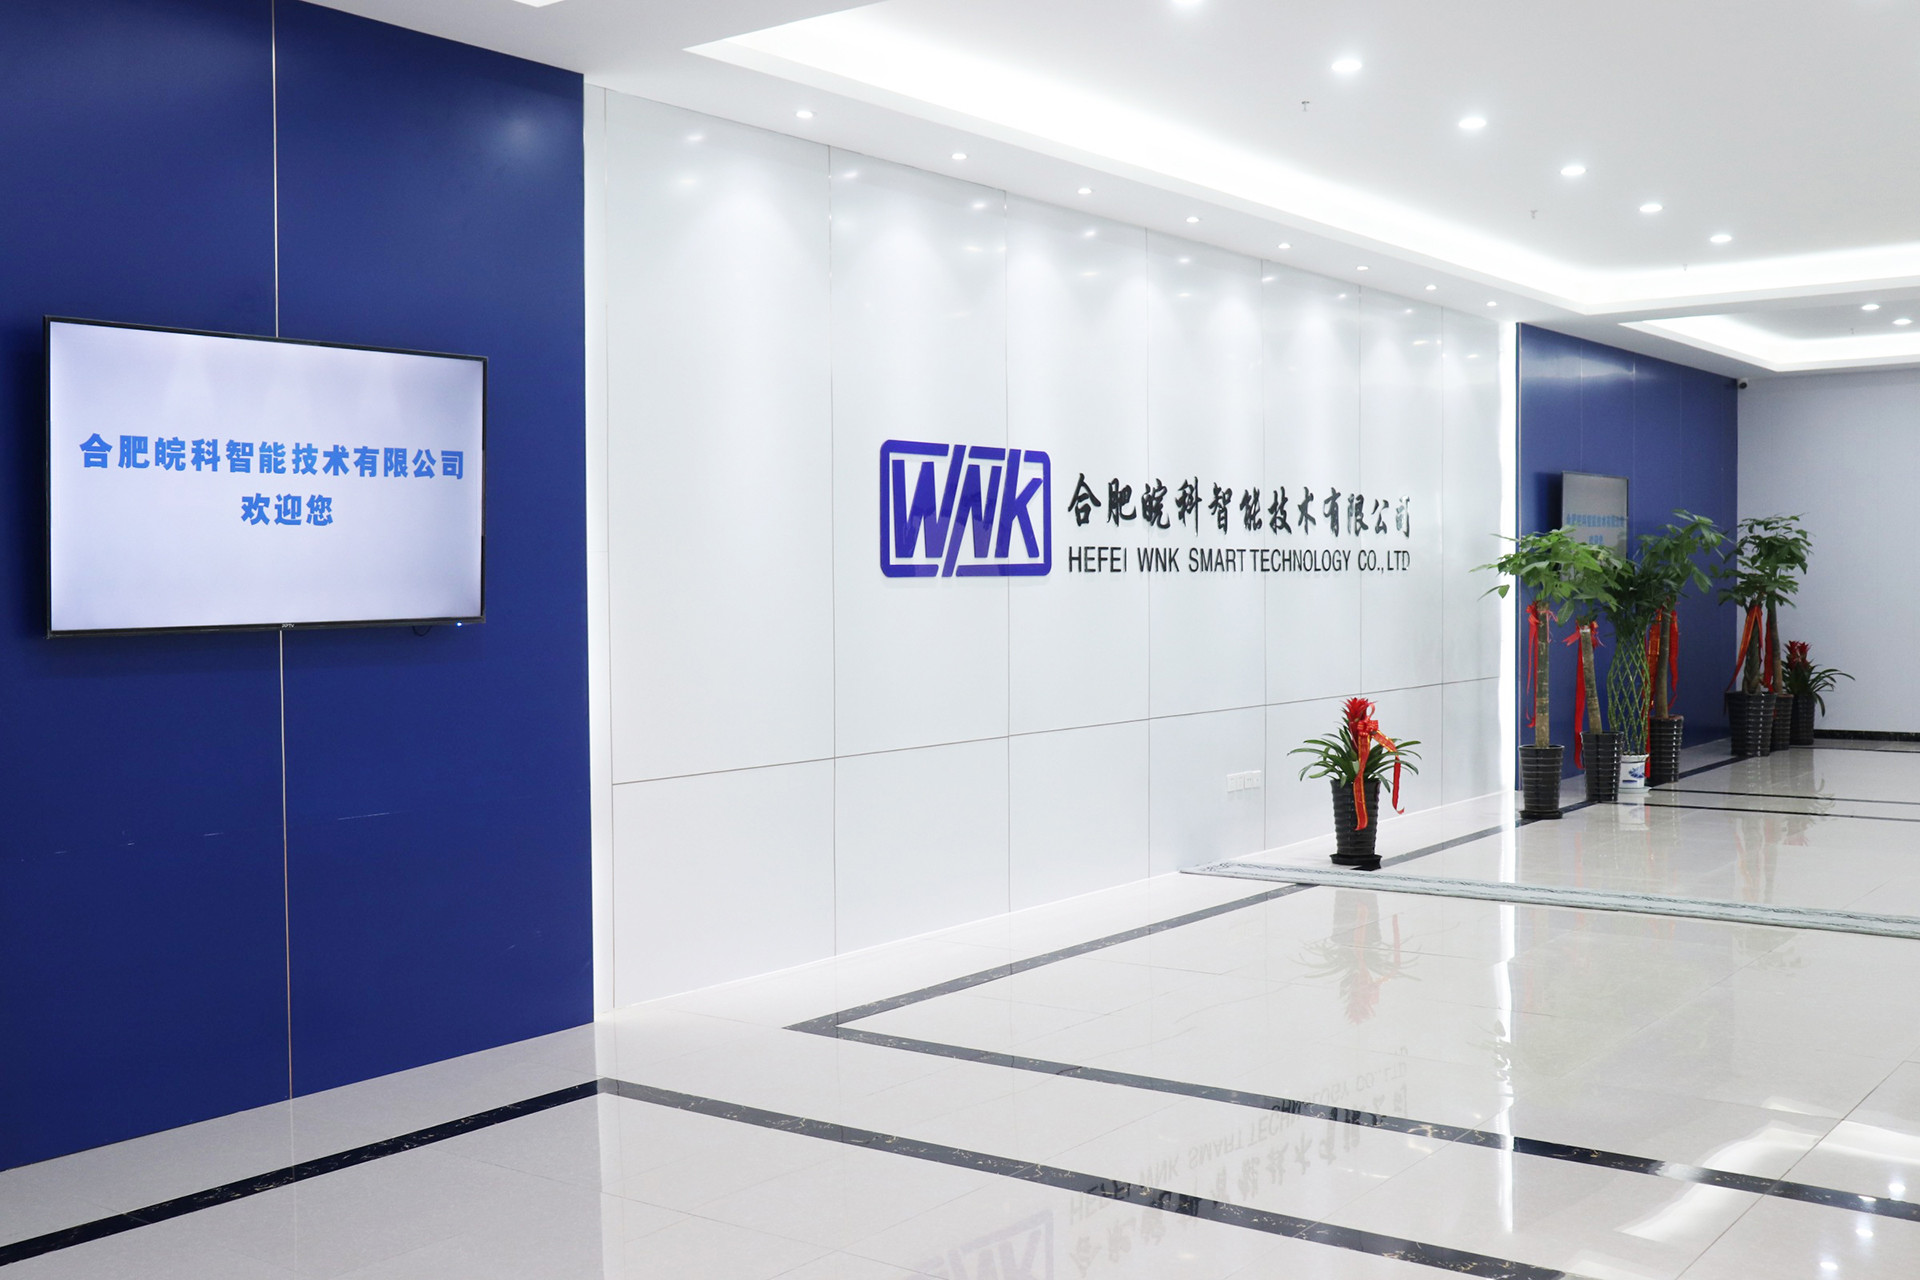 الصين Hefei WNK Smart Technology Co.,Ltd ملف الشركة